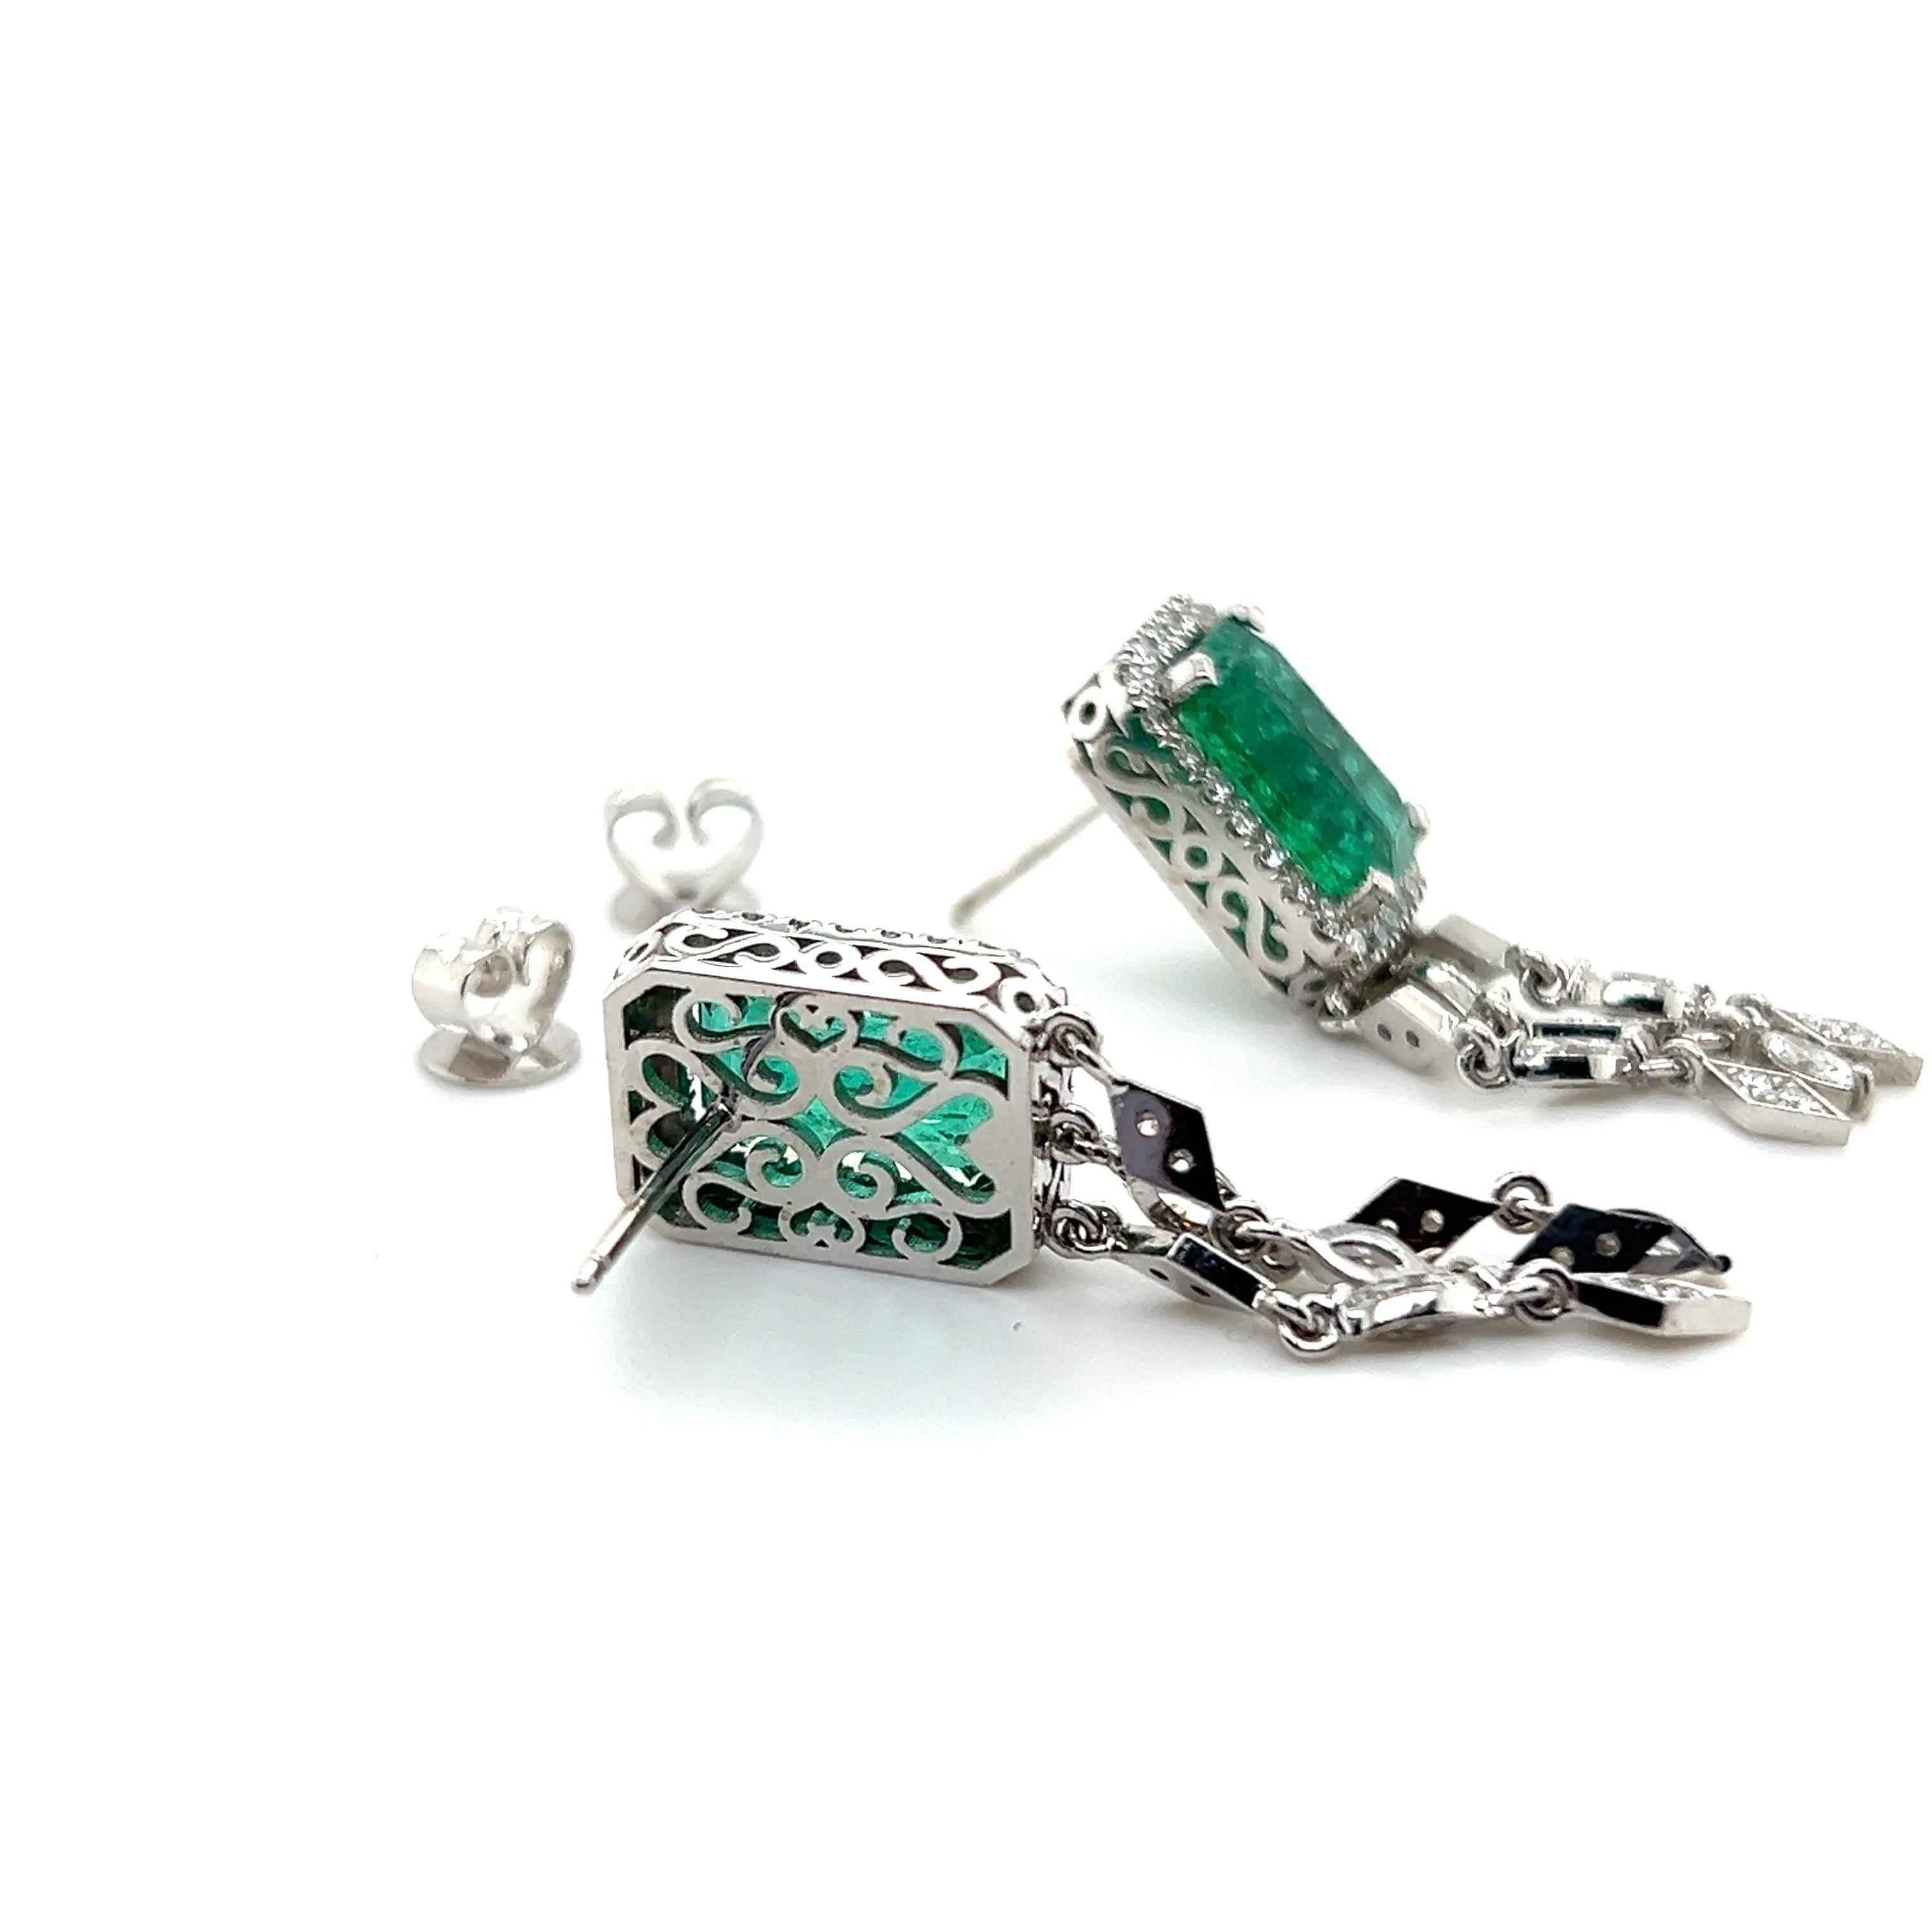 Emerald Cut 5.92 Carat Zambian Emerald Earrings For Sale